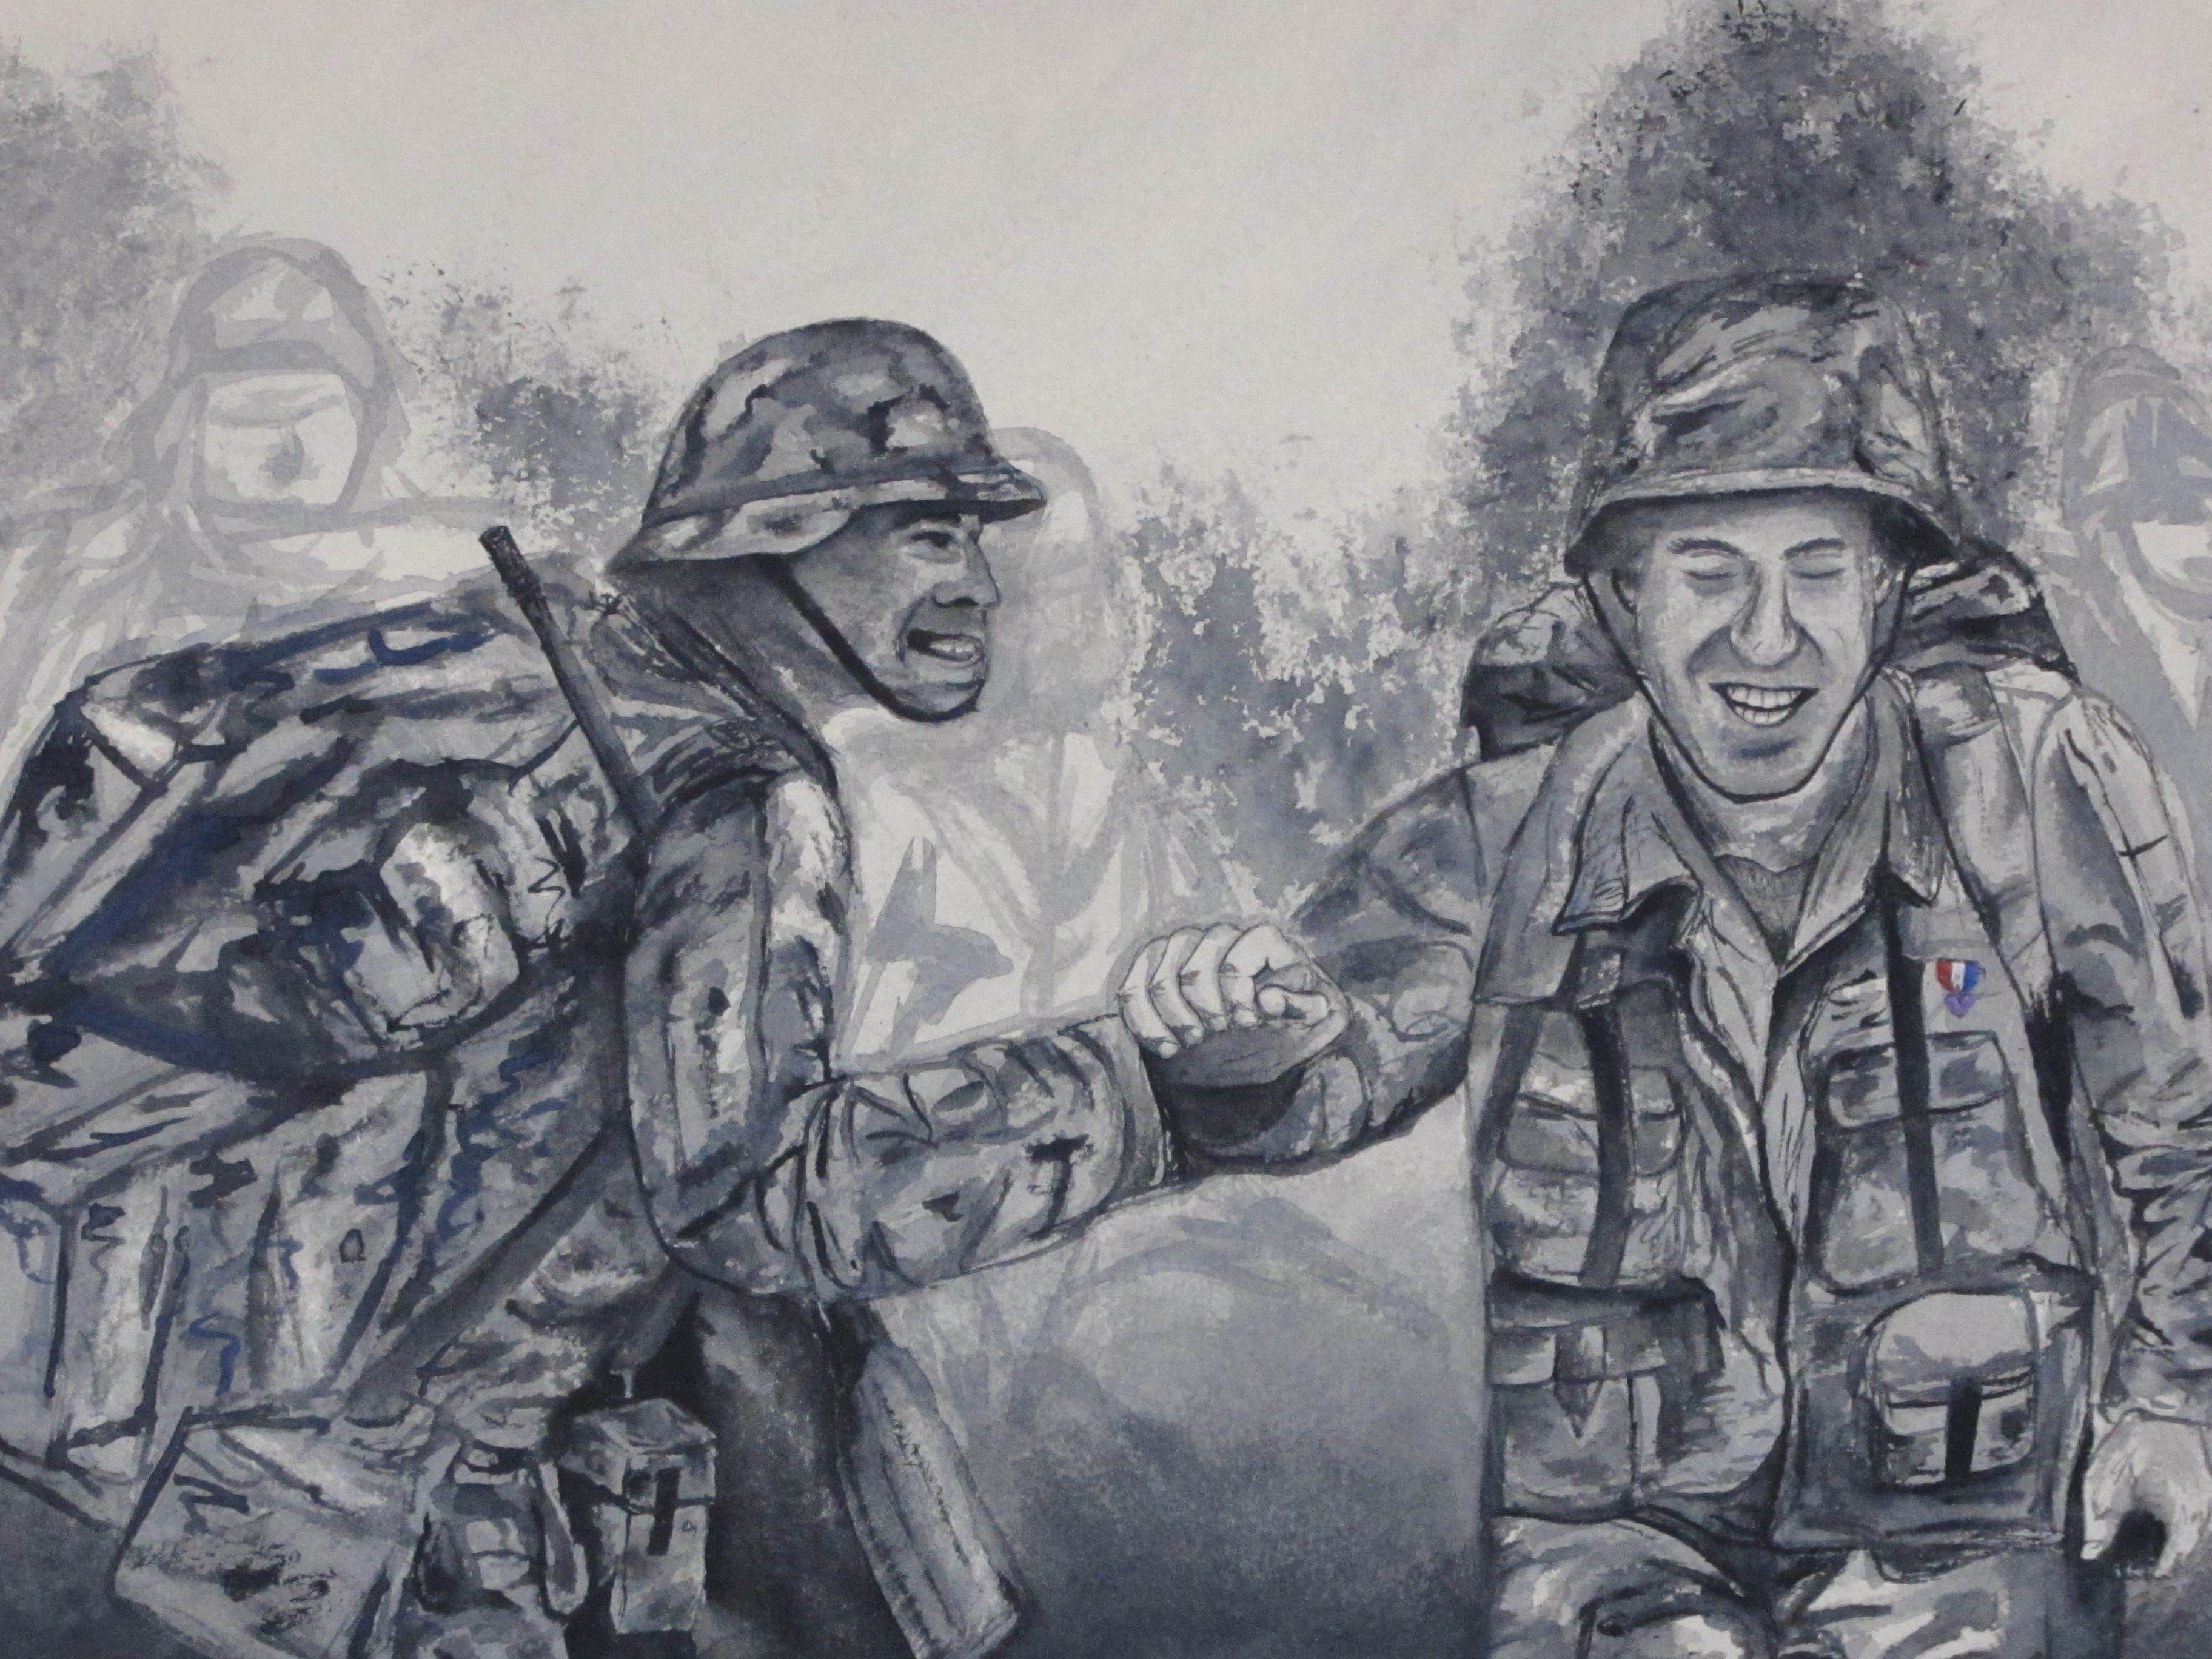 War Image, Watercolor